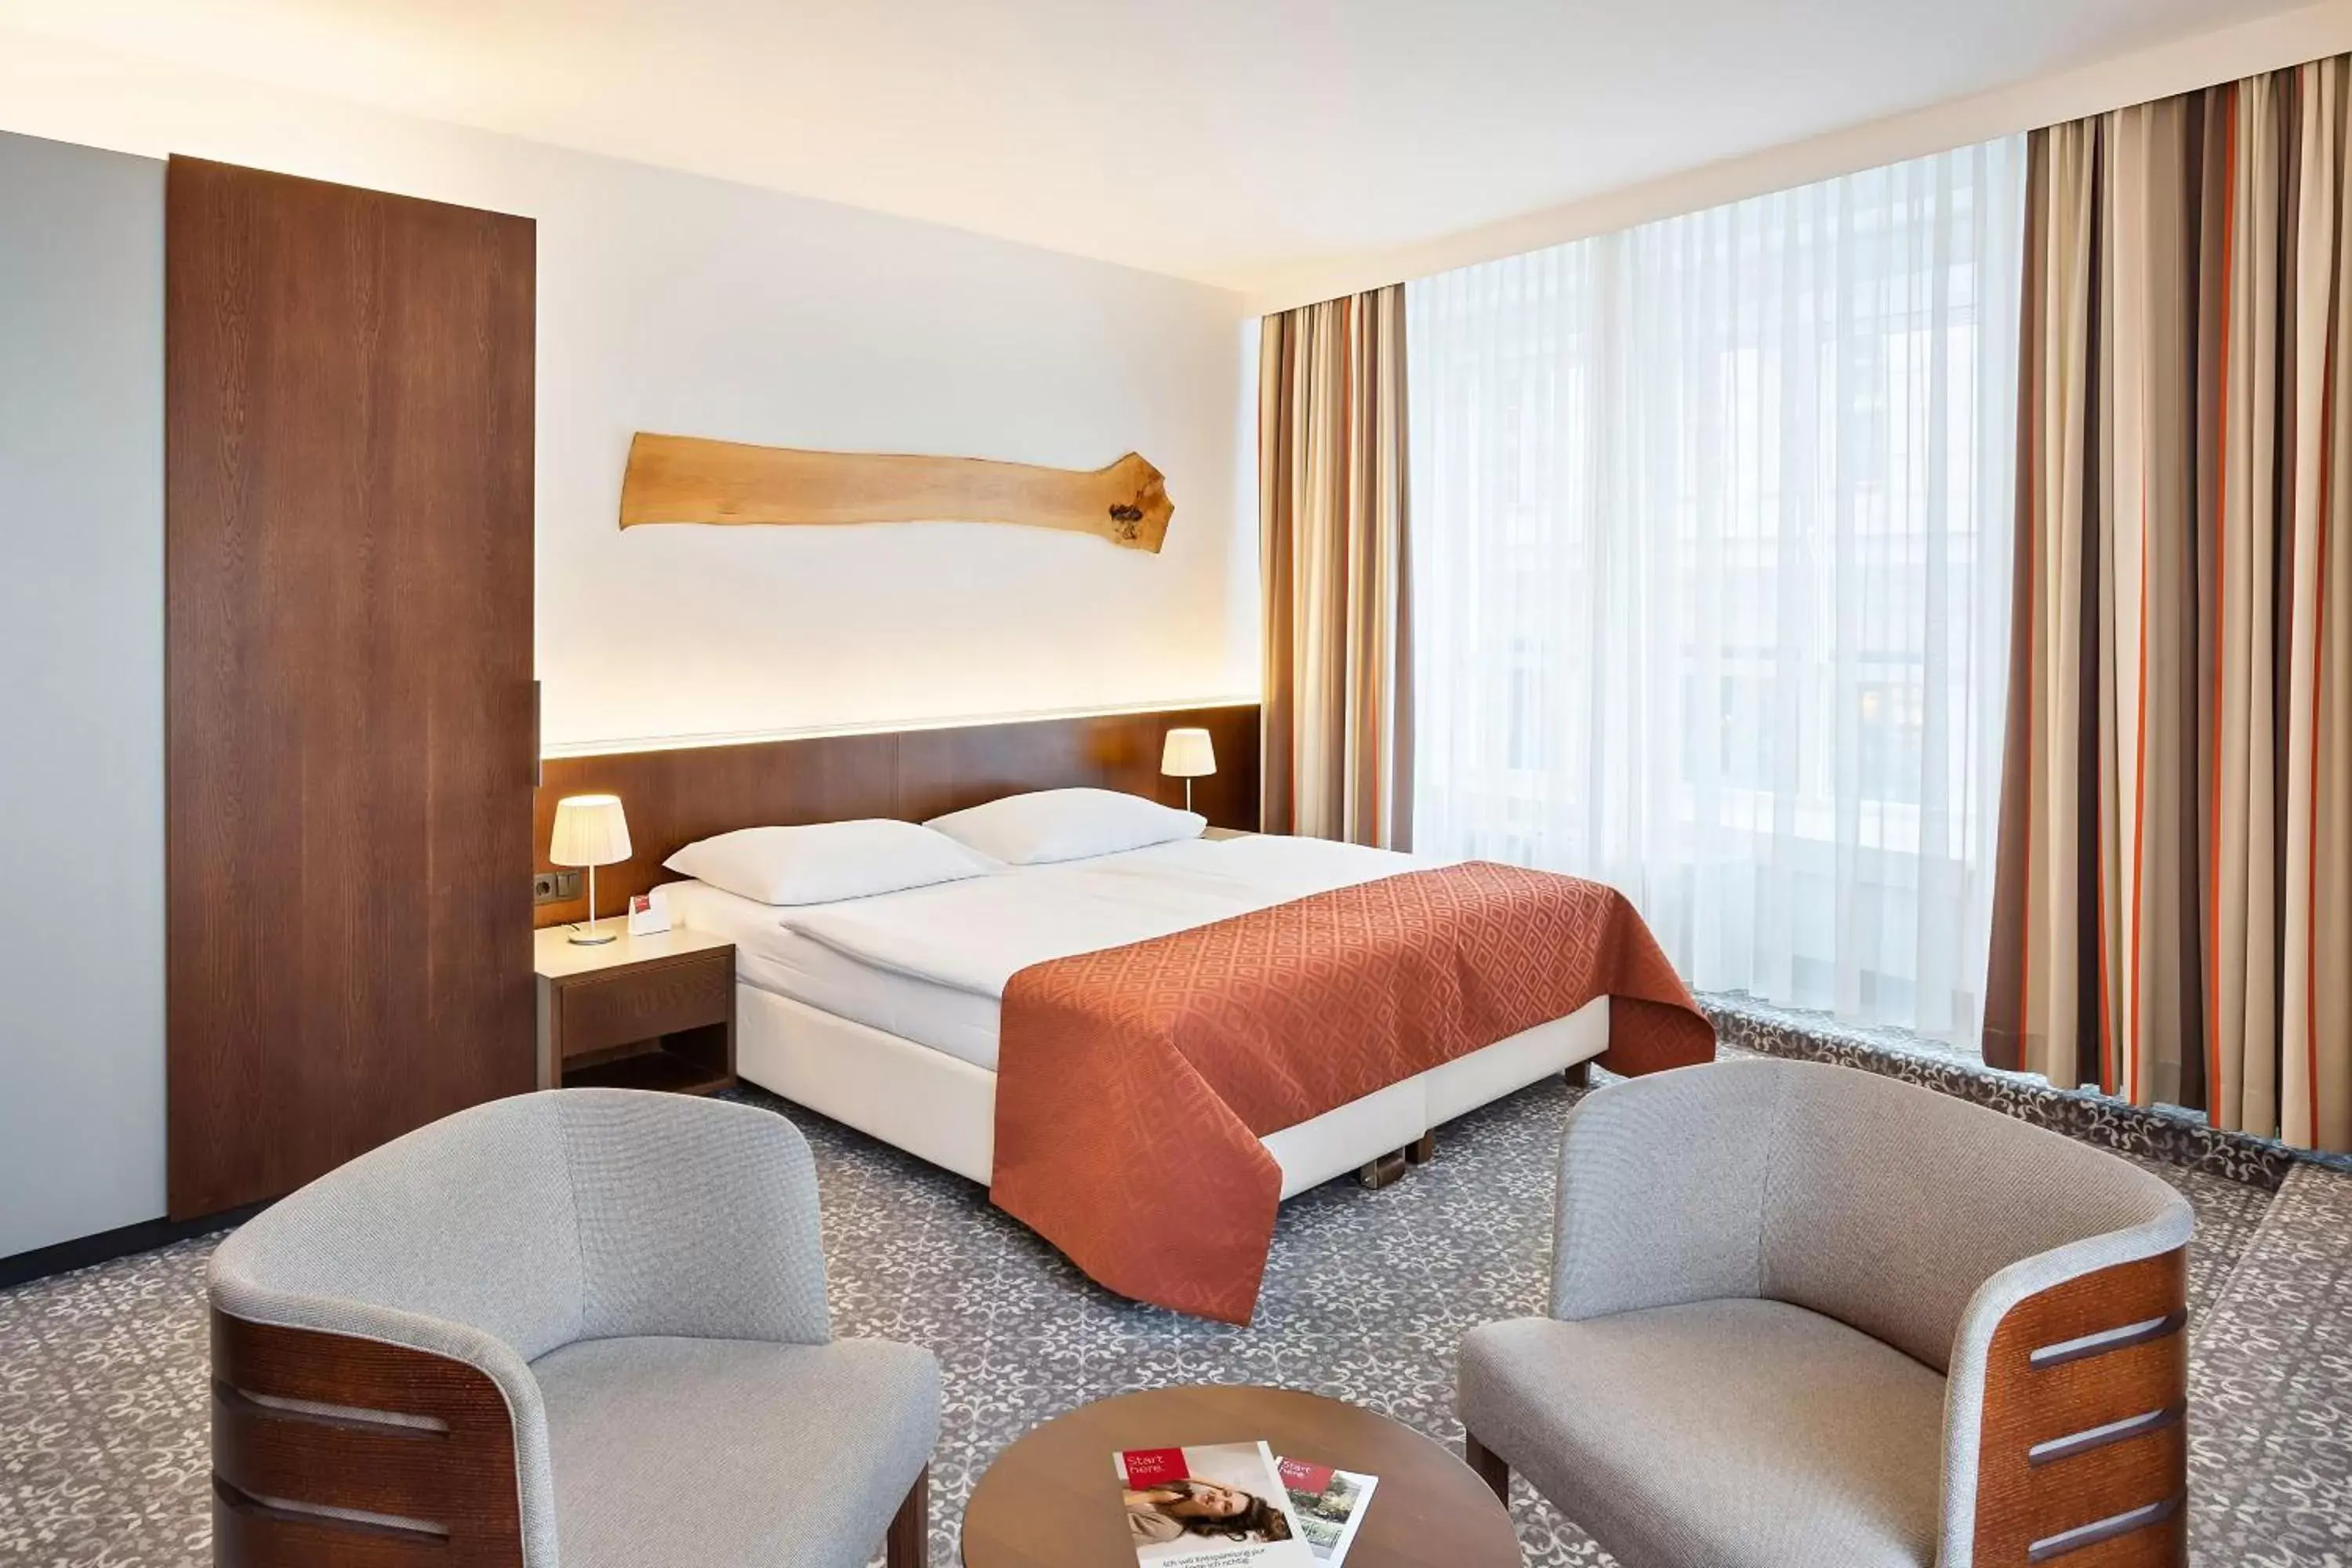 Bed in Austria Trend Hotel Europa Wien